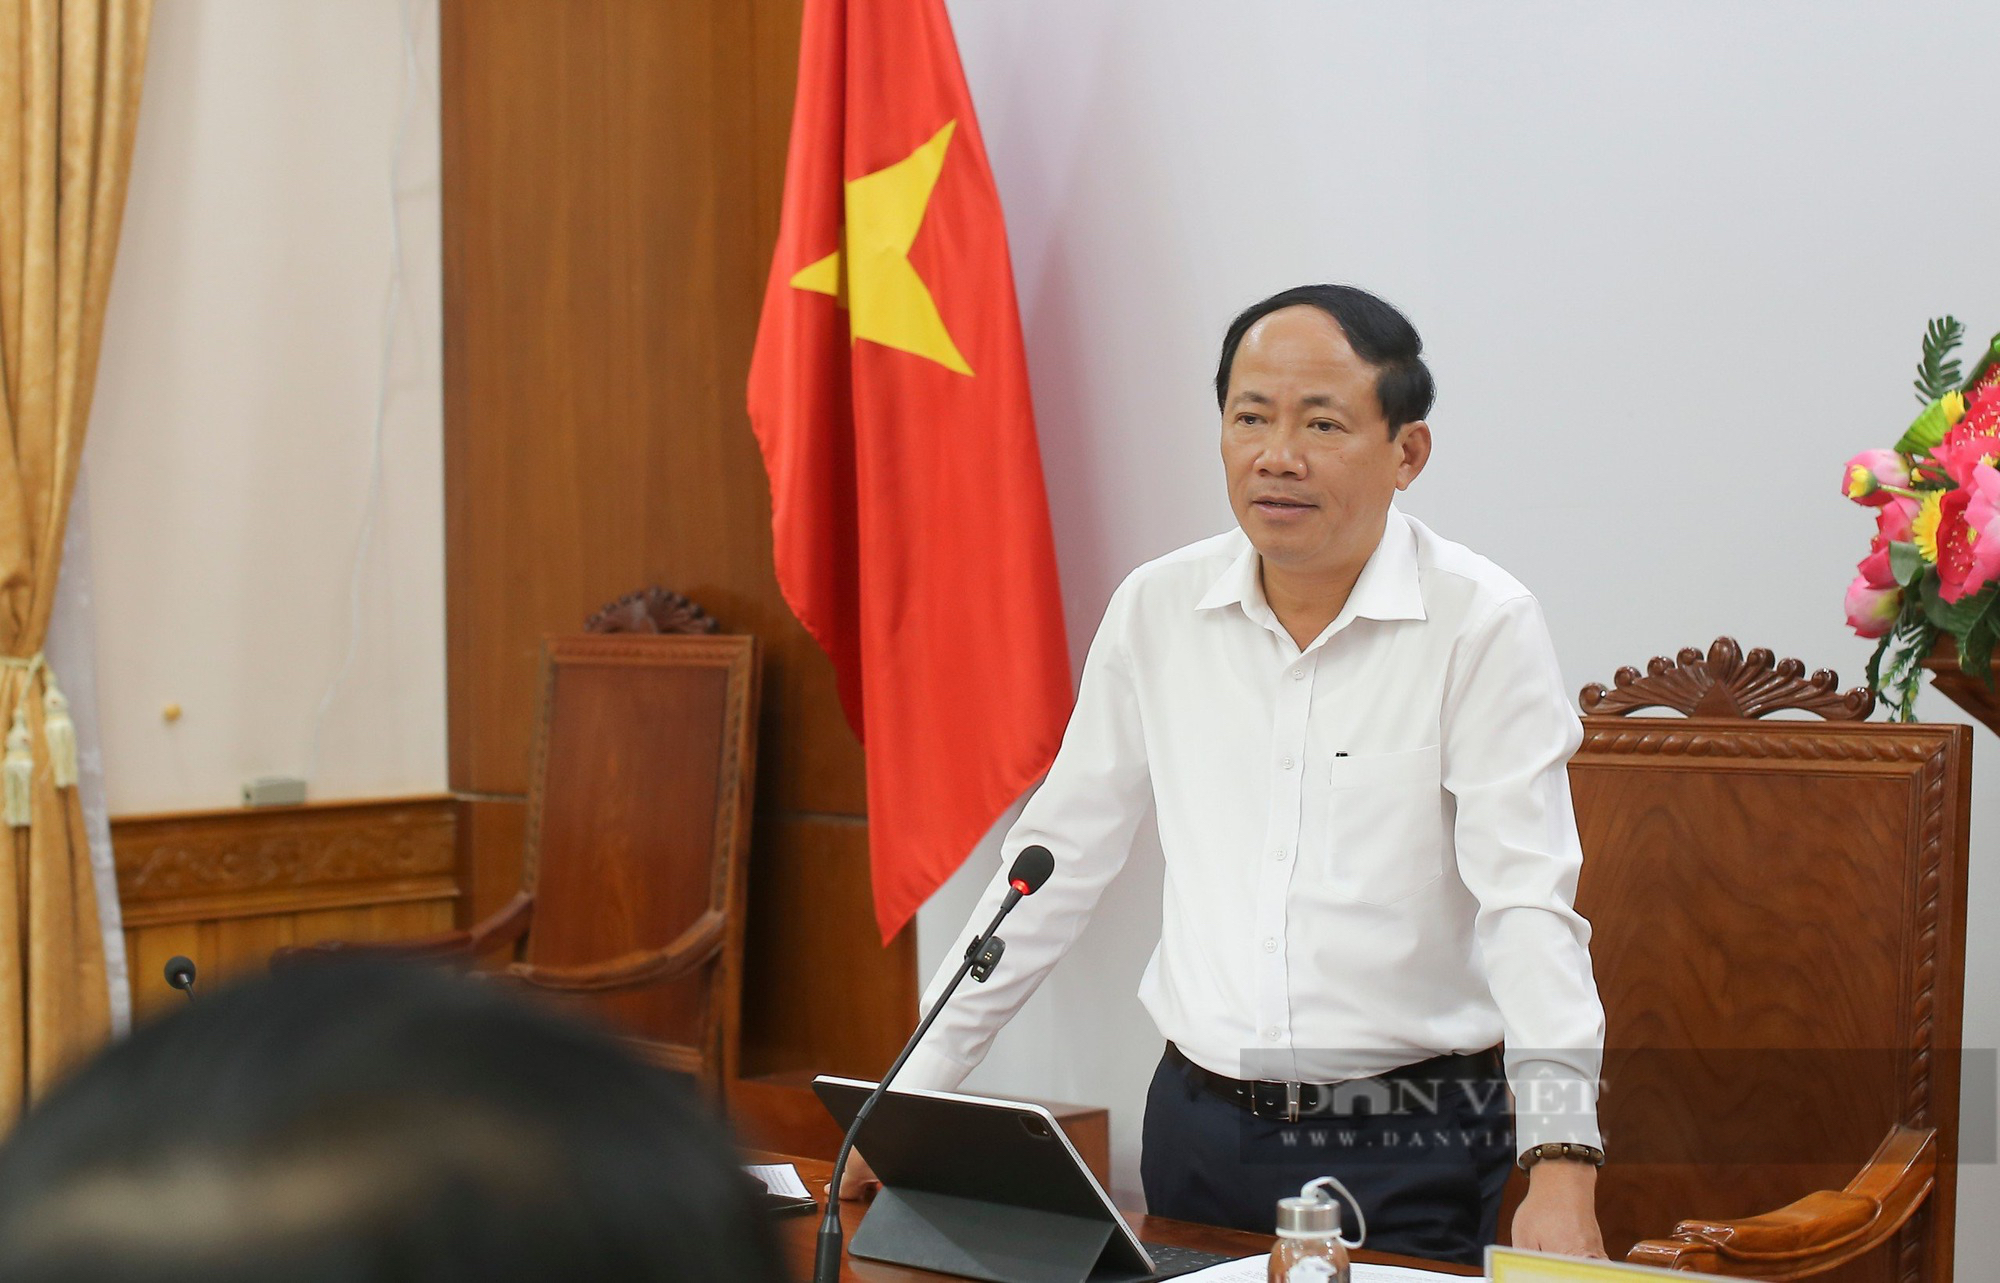 Chủ tịch, Phó Chủ tịch Bình Định nhận nhiệm vụ quan trọng tại Ban Chỉ đạo Cải cách hành chính- Ảnh 1.